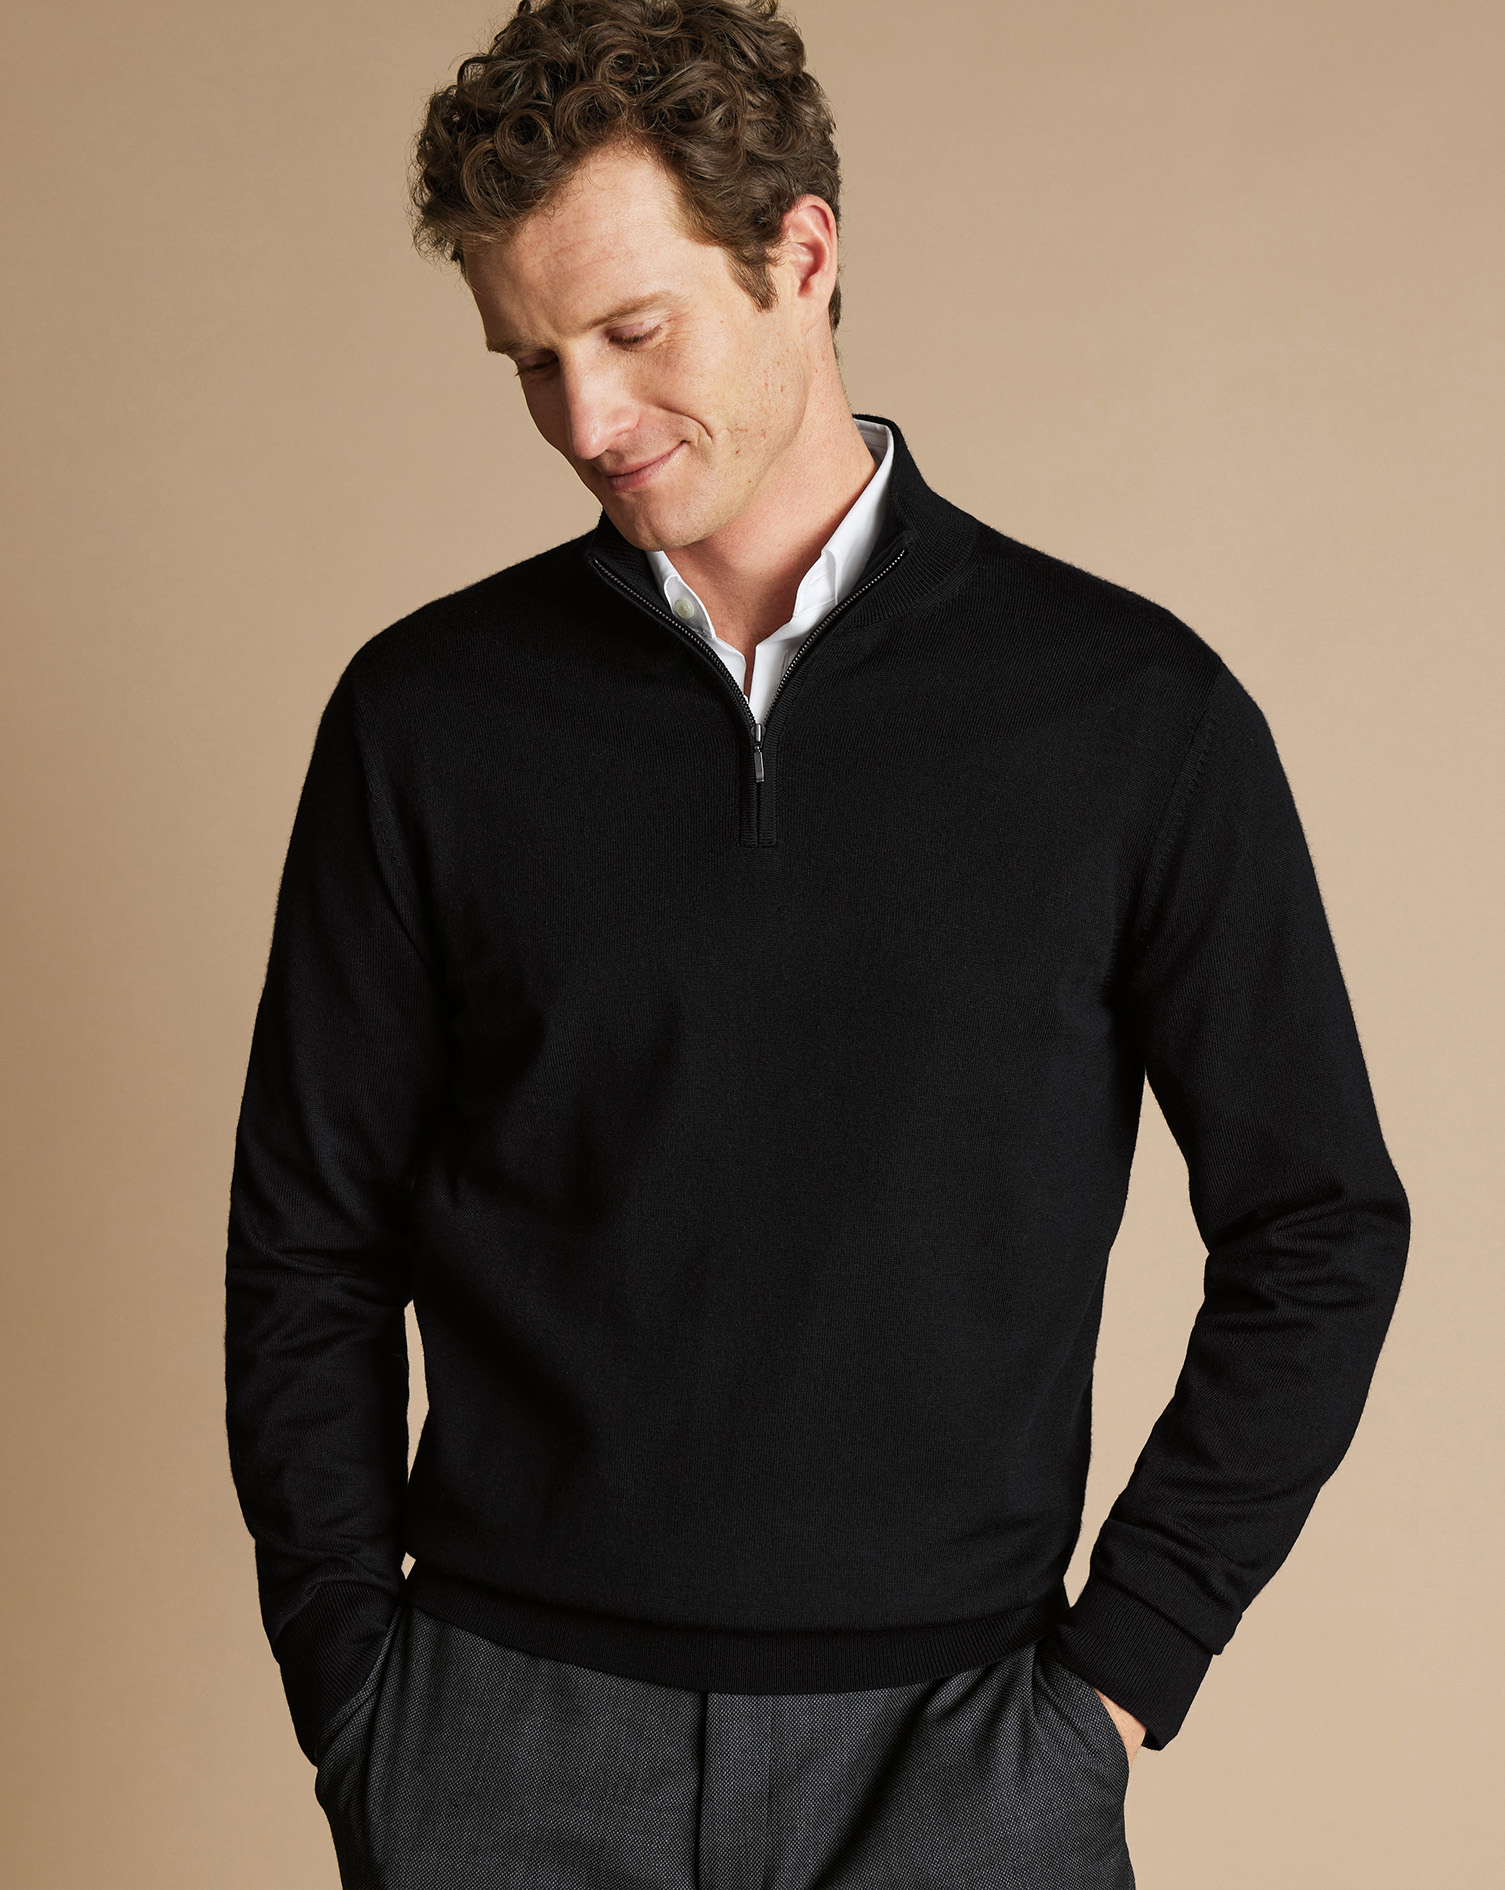 Men's Charles Tyrwhitt Zip Neck Sweater - Black Size Large Merino
